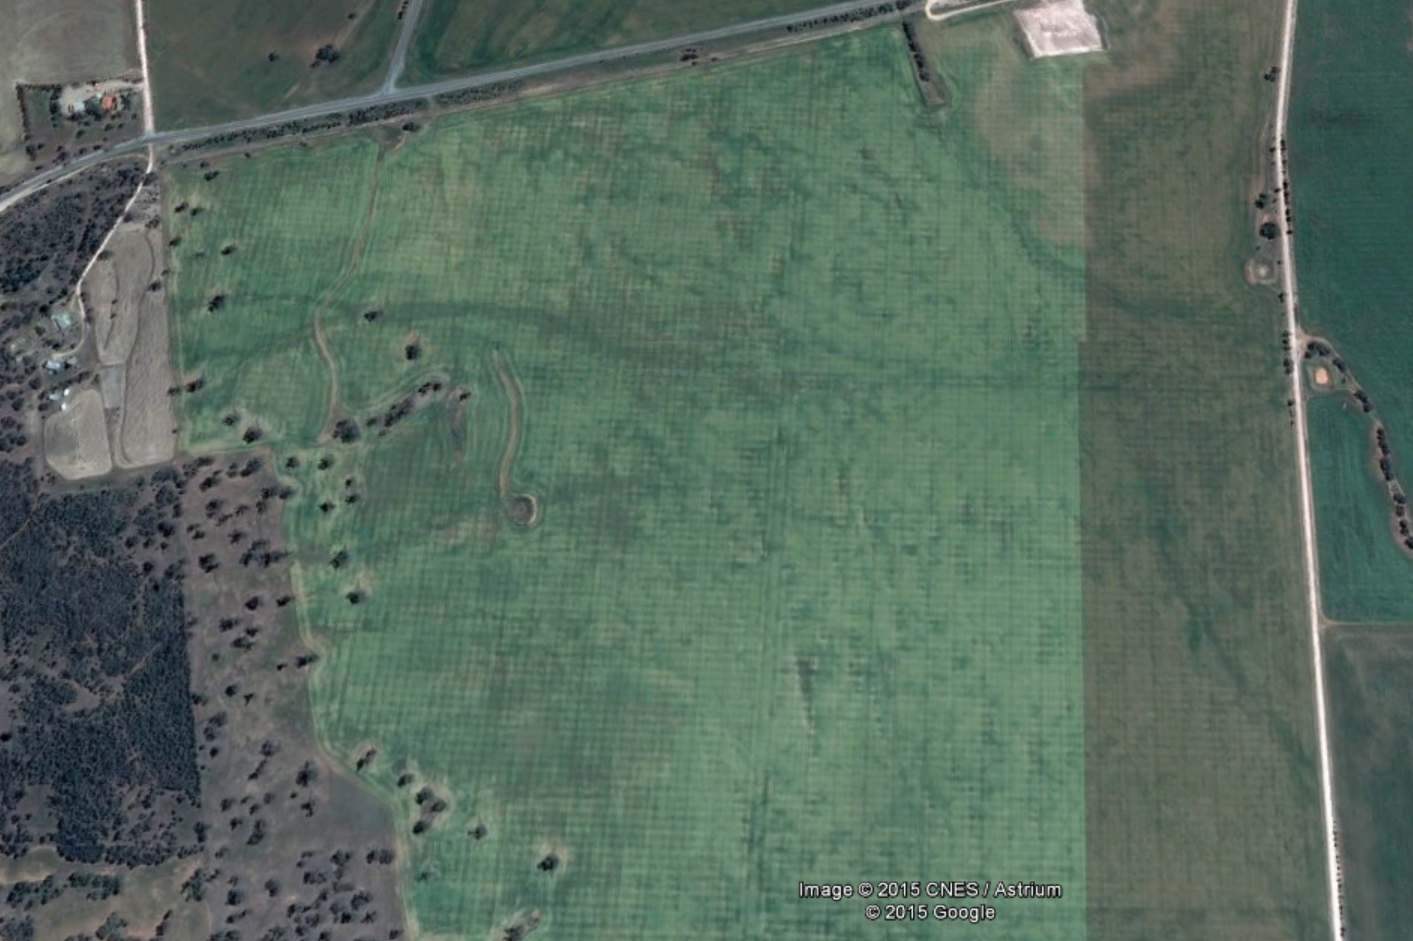 Google Earth screen capture of Hilltop Farm